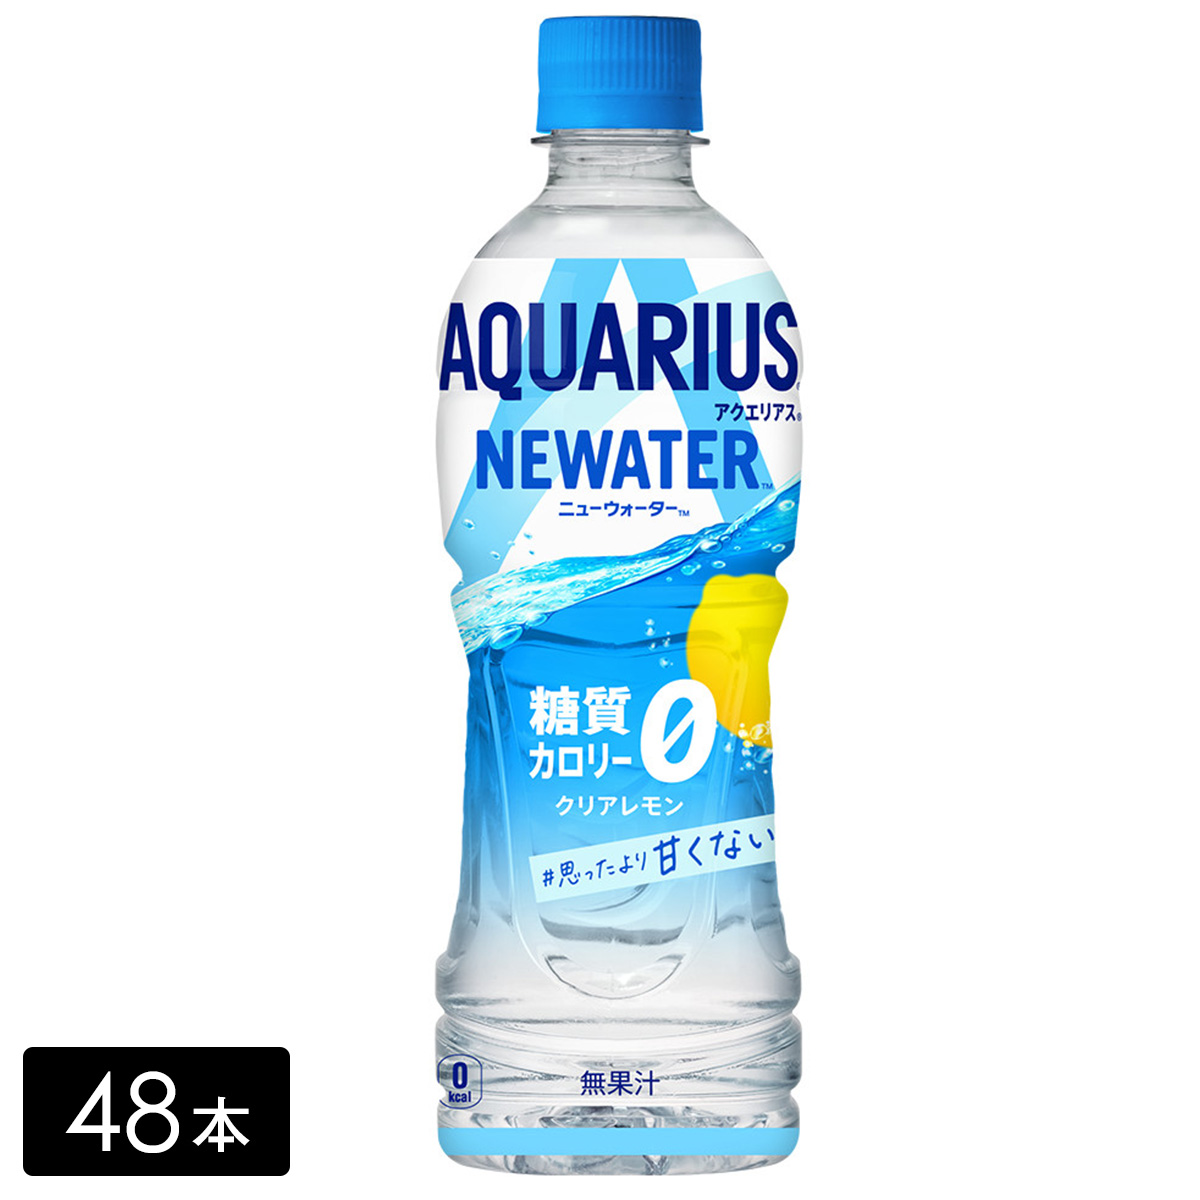 [送料無料]アクエリアス NEWATER(ニューウォーター) 500ml×48本(24本×2箱) カロリーゼロ 糖質ゼロ 熱中症対策 水分補給 AQUARIUS ペットボトル ケース売り まとめ買い